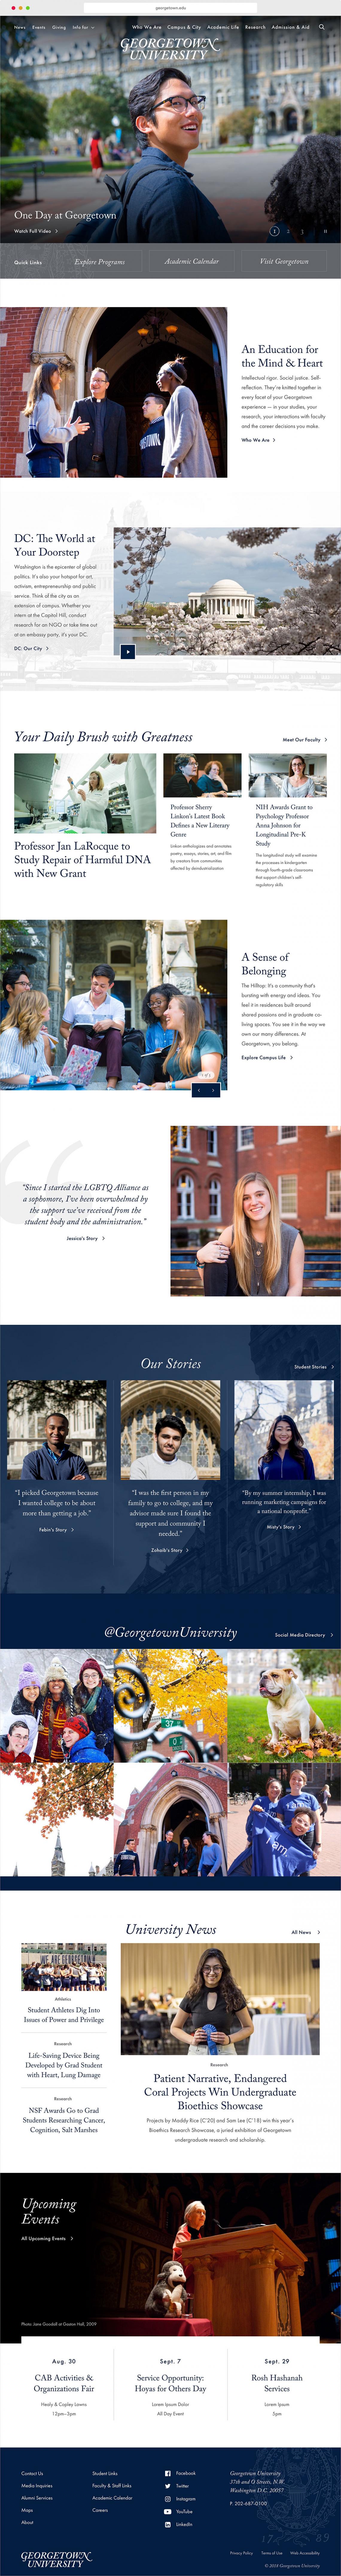 Georgetown Homepage